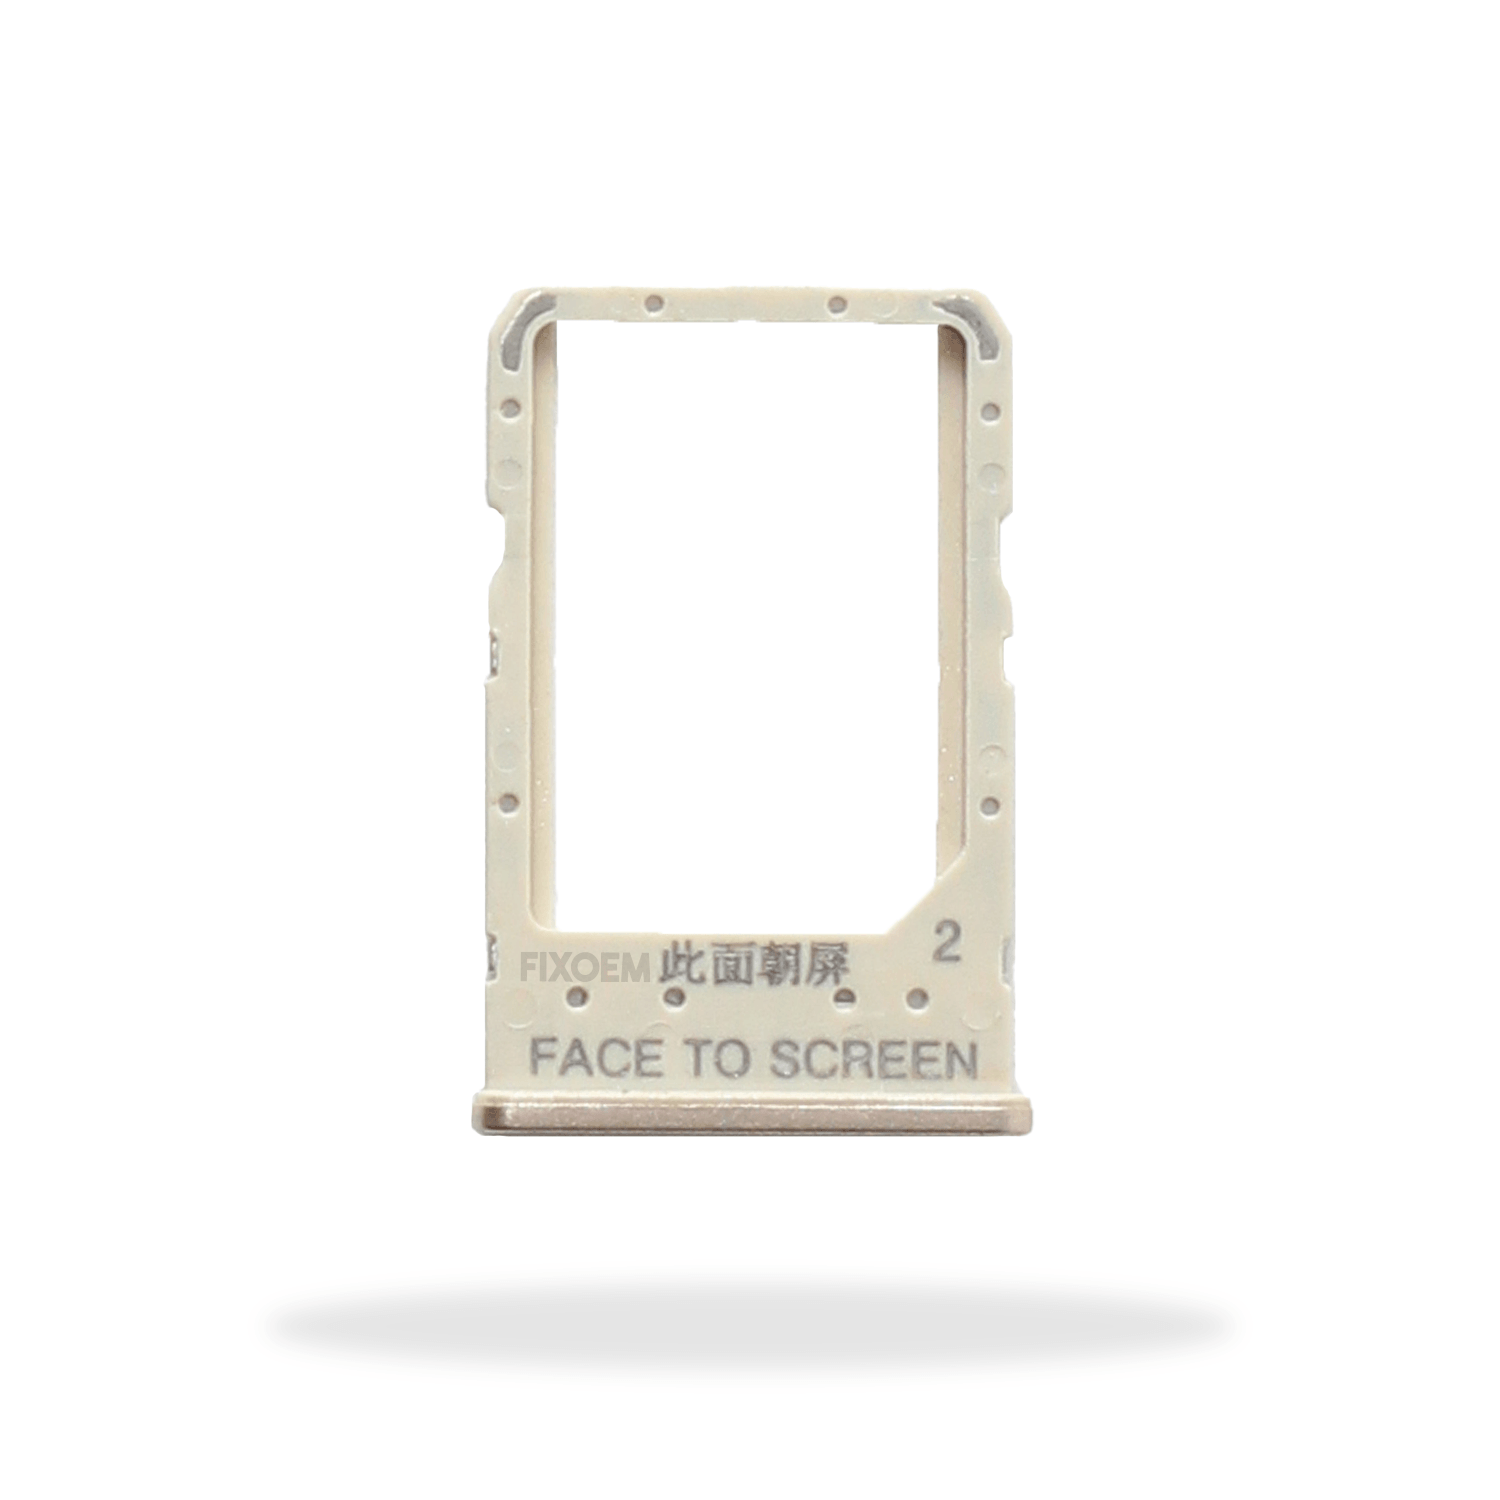 Charola Sim Xiaomi Redmi 6A a solo $ 50.00 Refaccion y puestos celulares, refurbish y microelectronica.- FixOEM